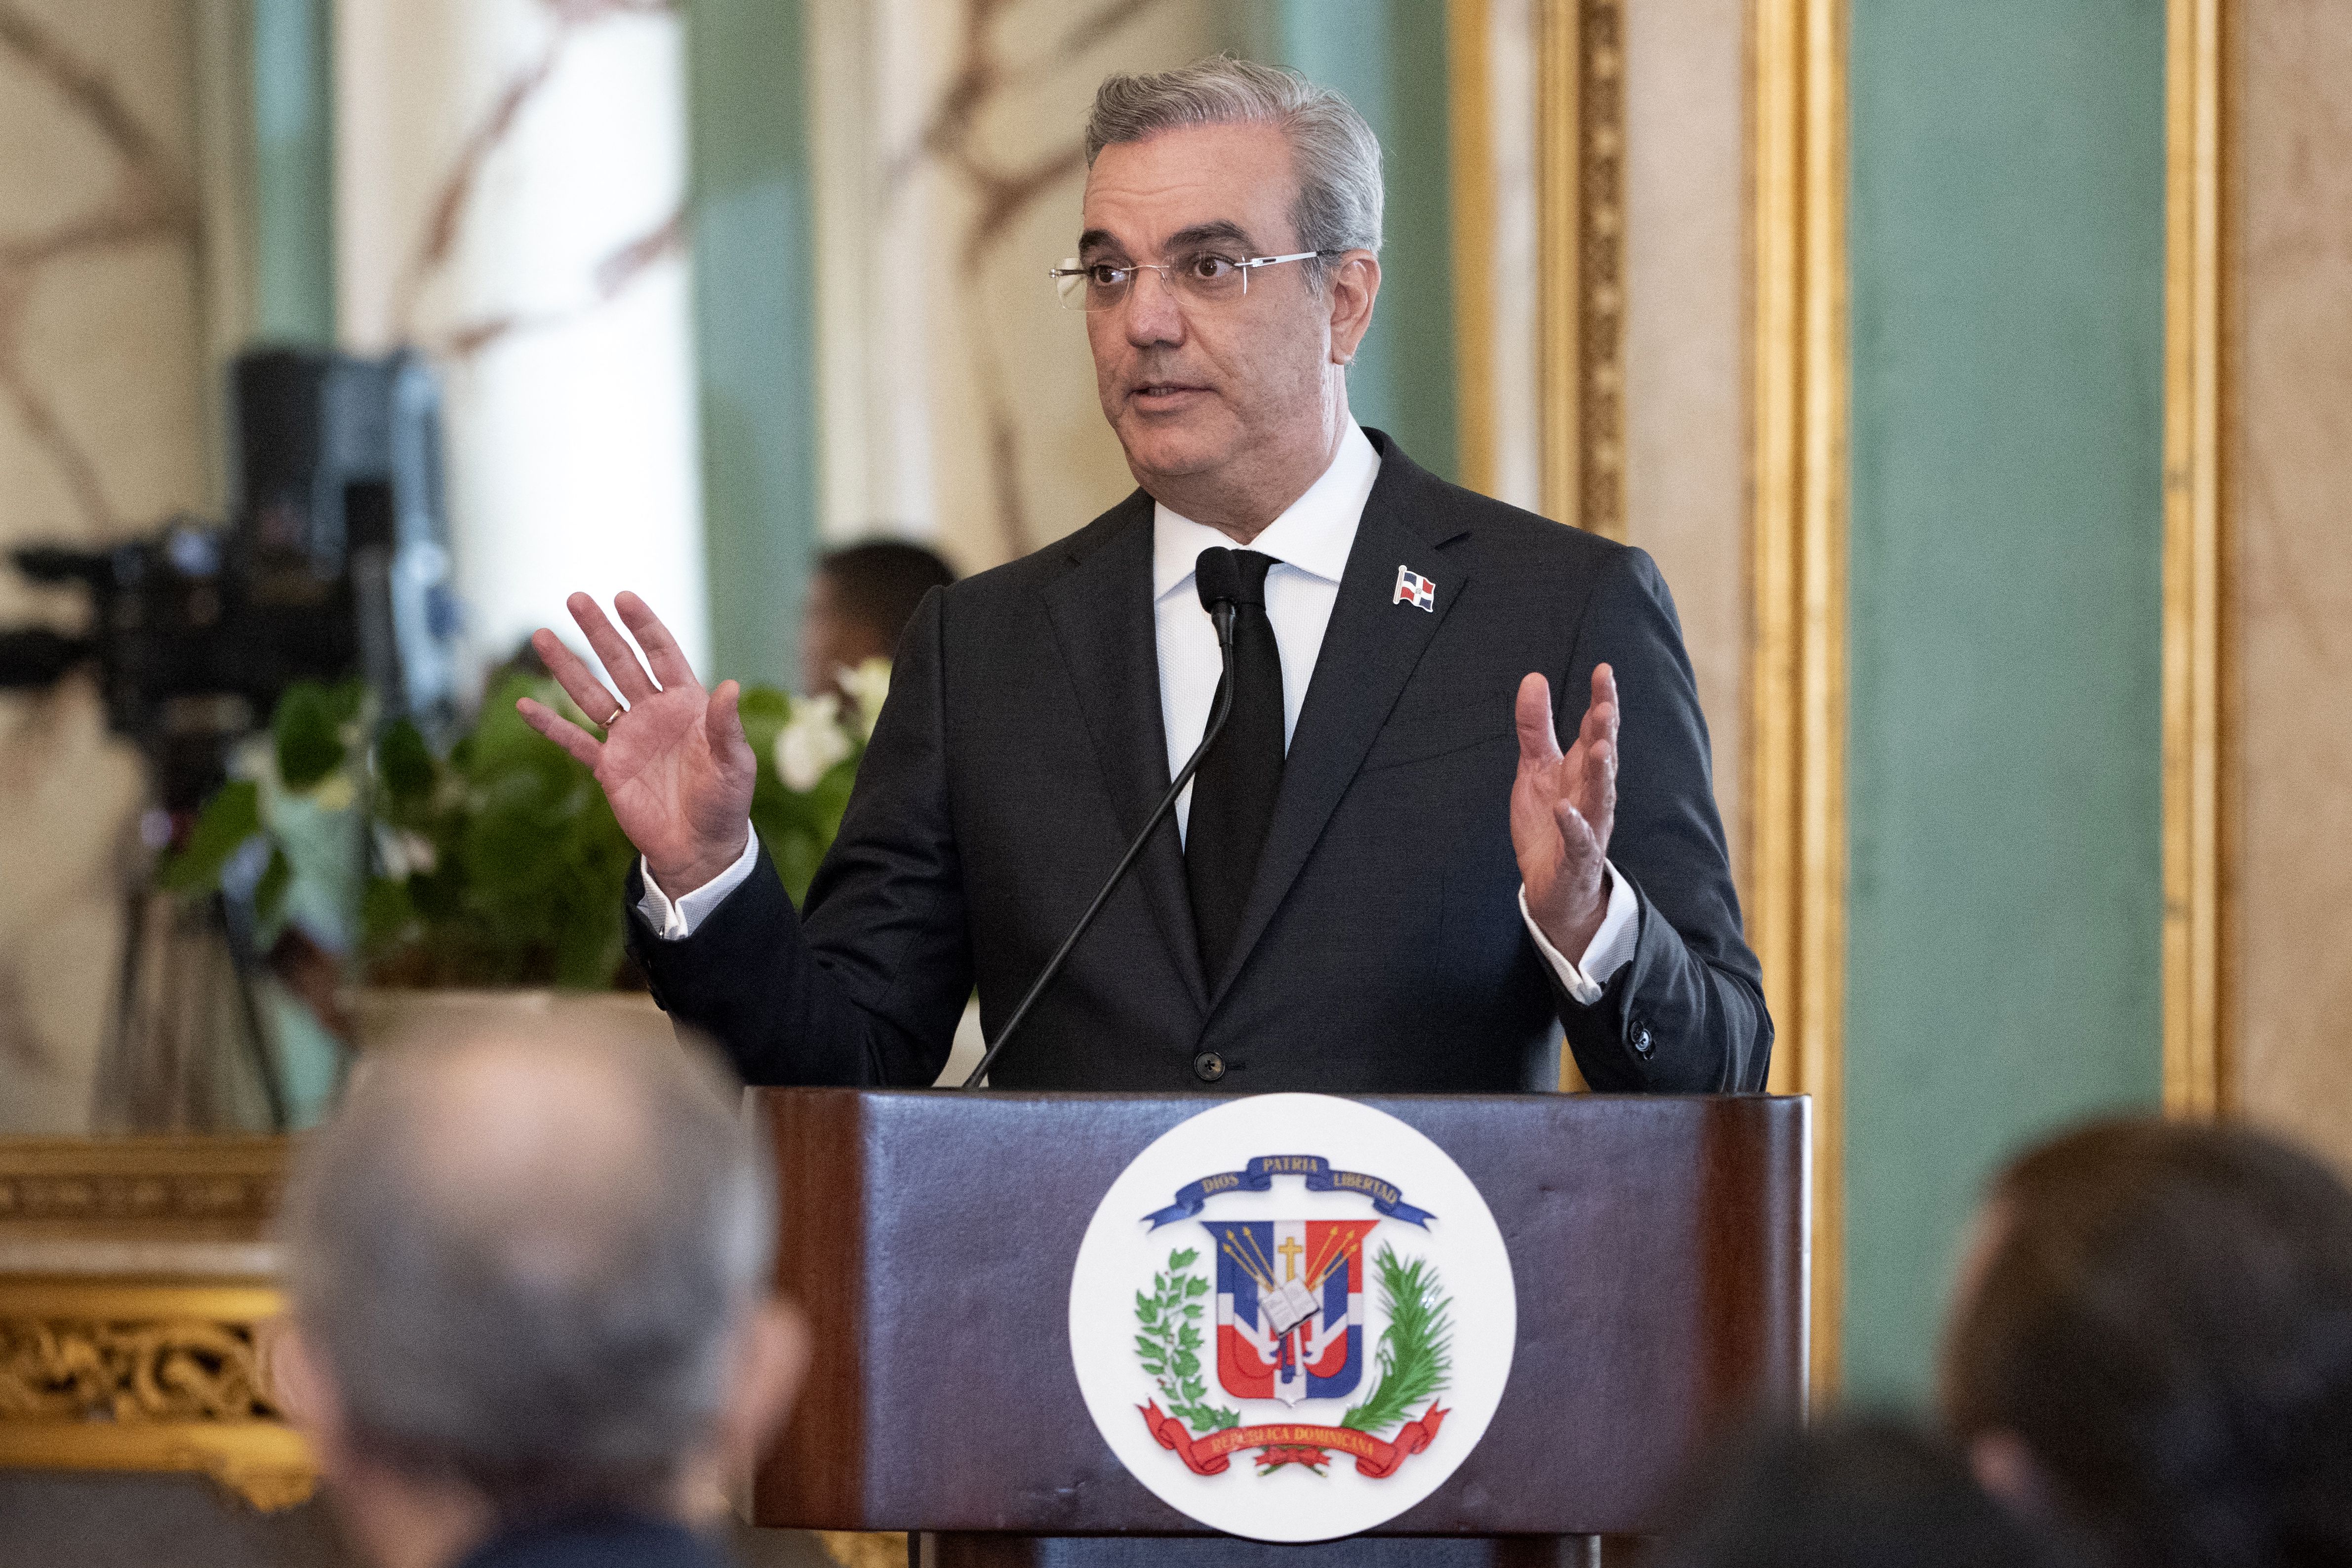 El presidente de República Dominicana, Luis Abinader, pronuncia un discurso en el Palacio Nacional de Santo Domingo . (Foto de Félix León / AFP)